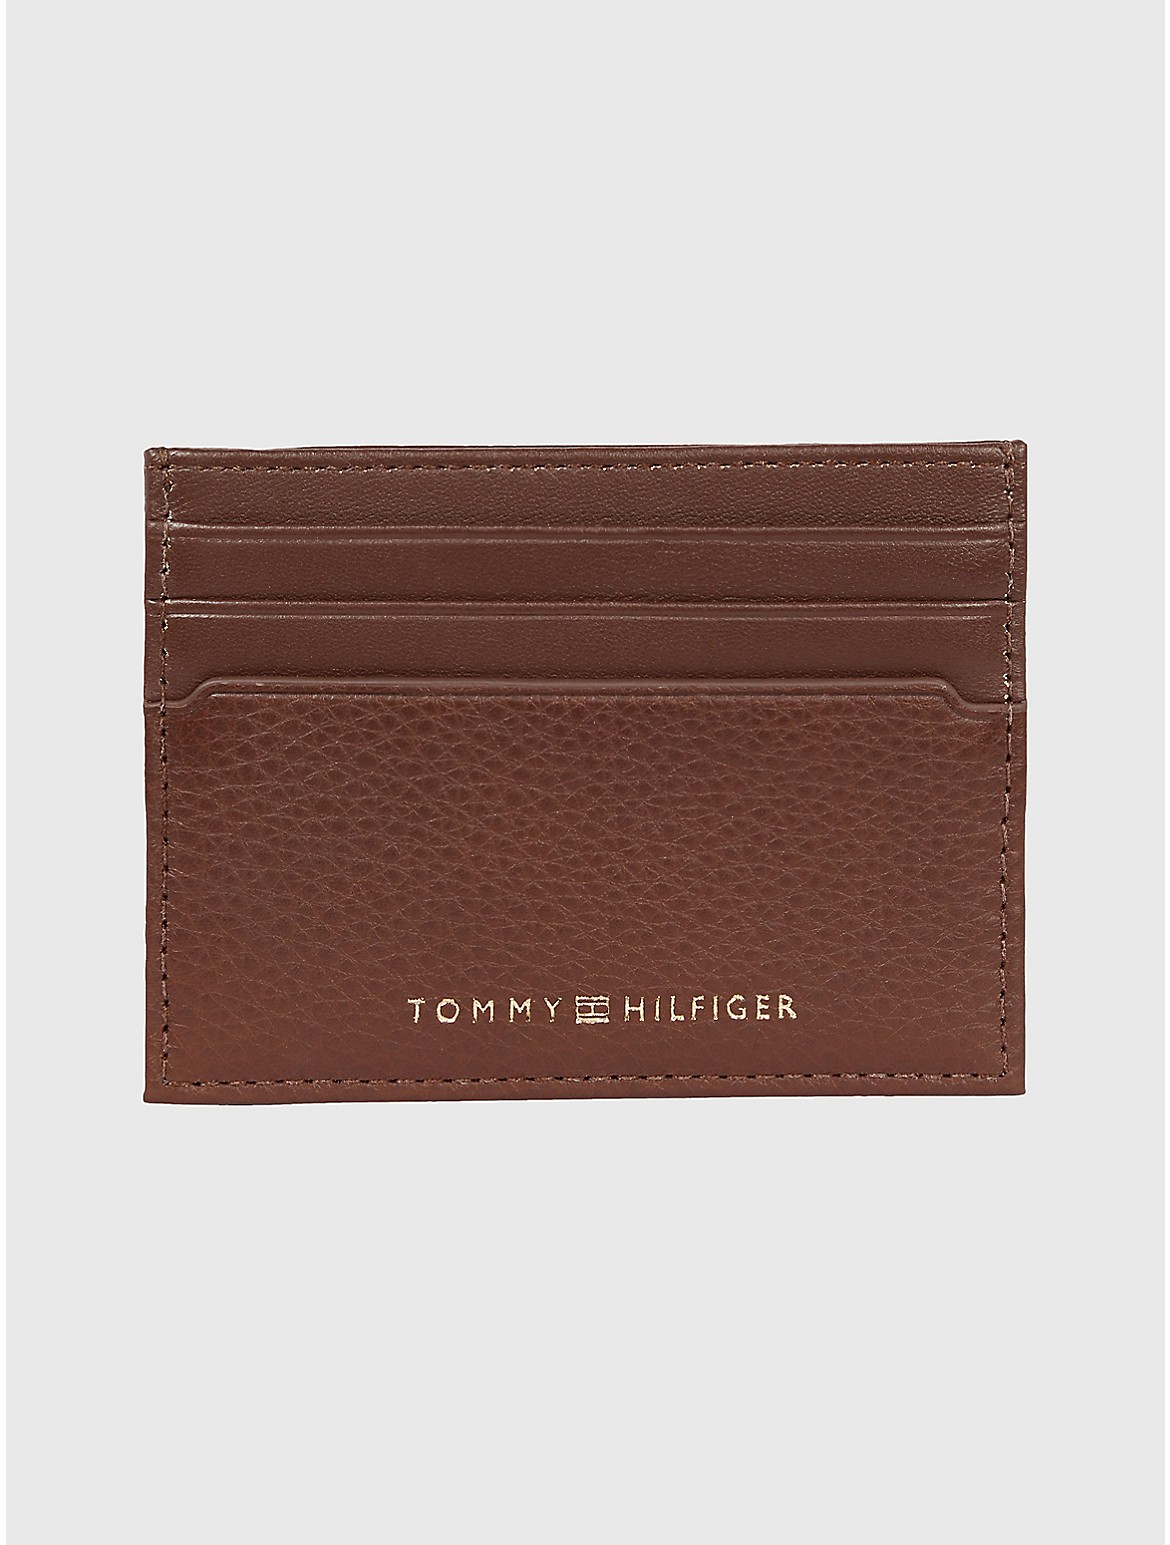 Tommy Hilfiger Men's Pebbled Leather Credit Card Holder - Brown